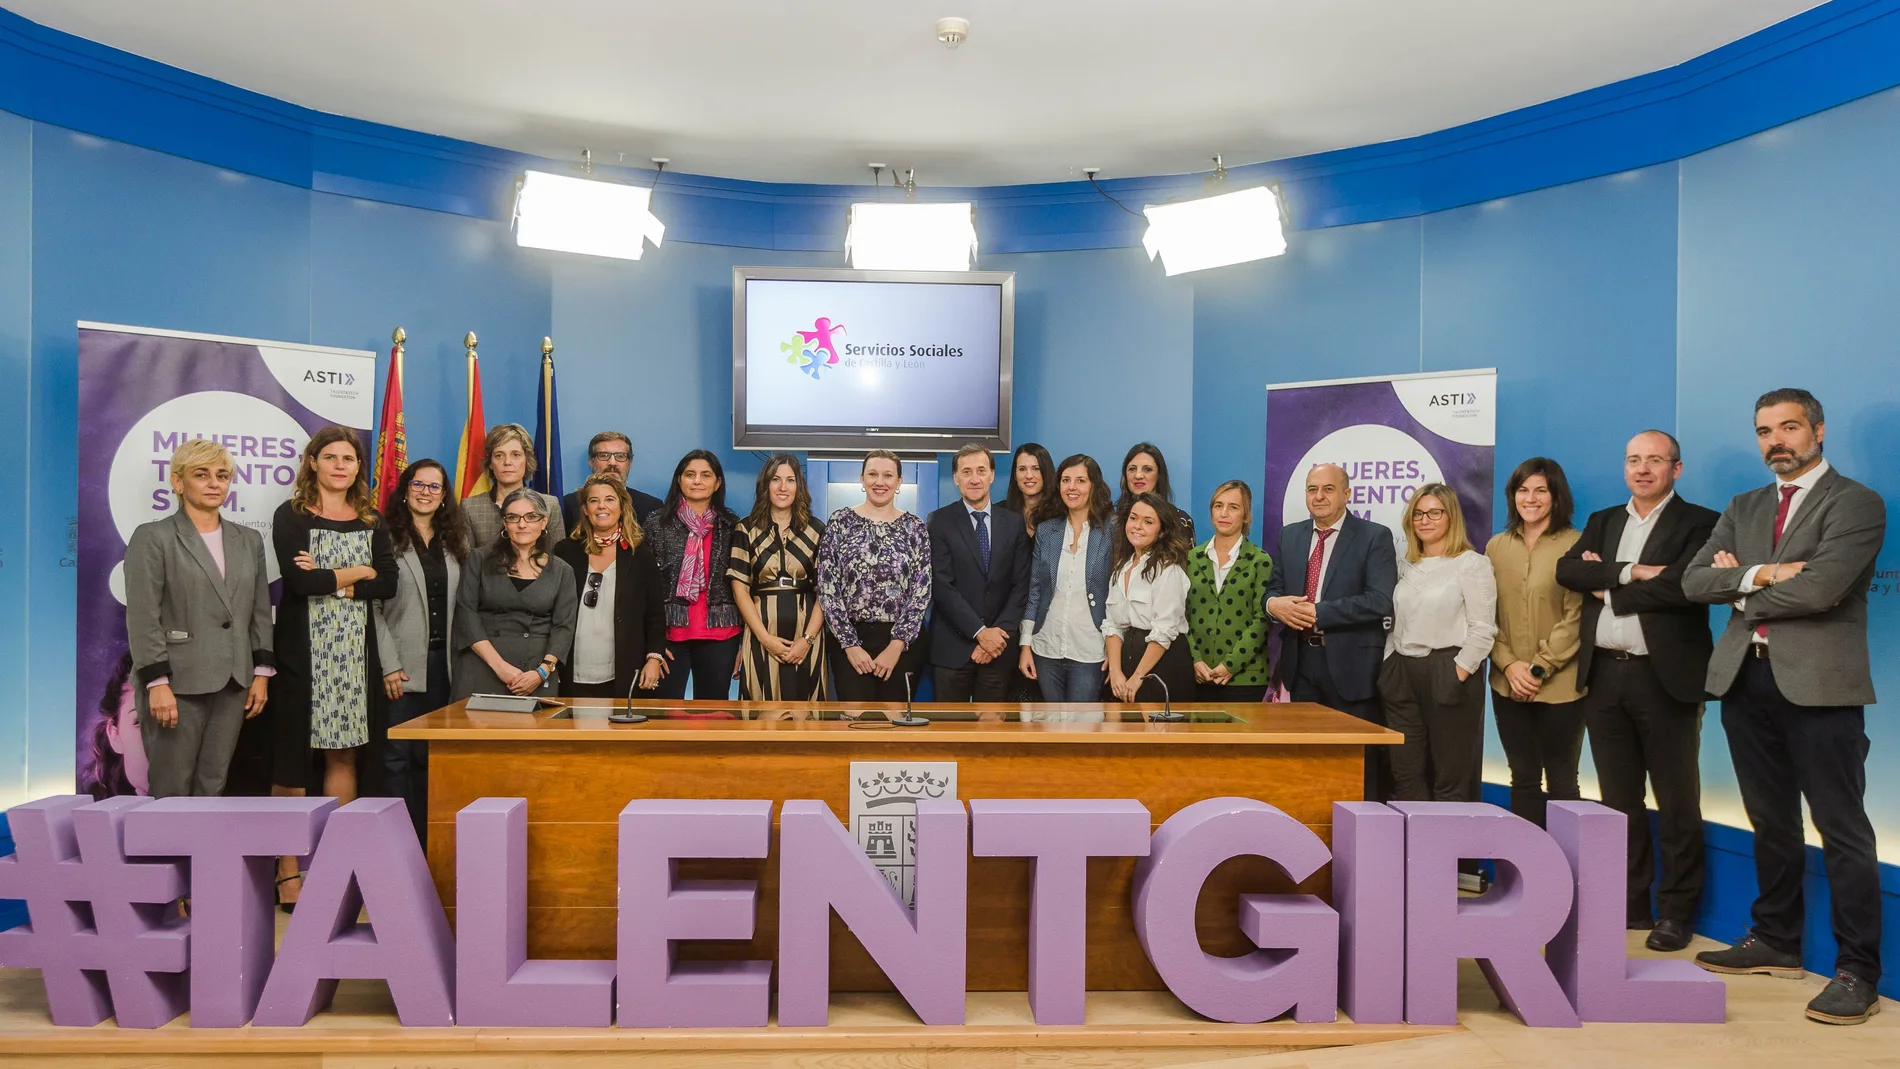 Presentación del programa STEM Talent Girl para fomentar el talento científico y tecnológico entre las niñas y jóvenes de Castilla y León